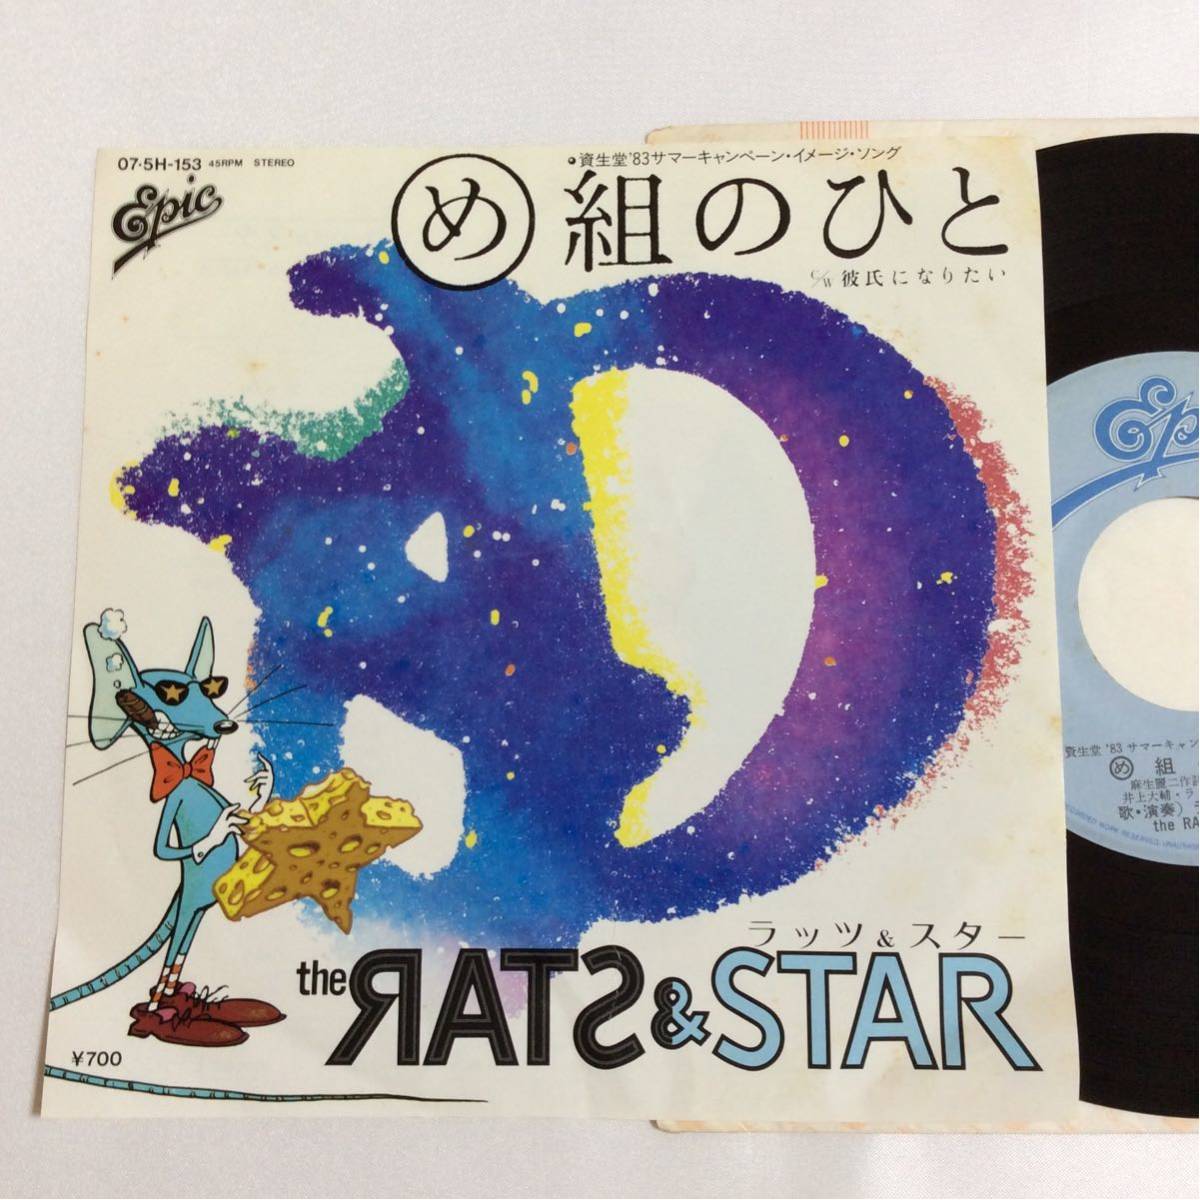 ラッツ&スター / め組のひと / 7inch レコード / RATS & STAR / 鈴木雅之 / 田代マサシ / 井上大輔 /_画像1